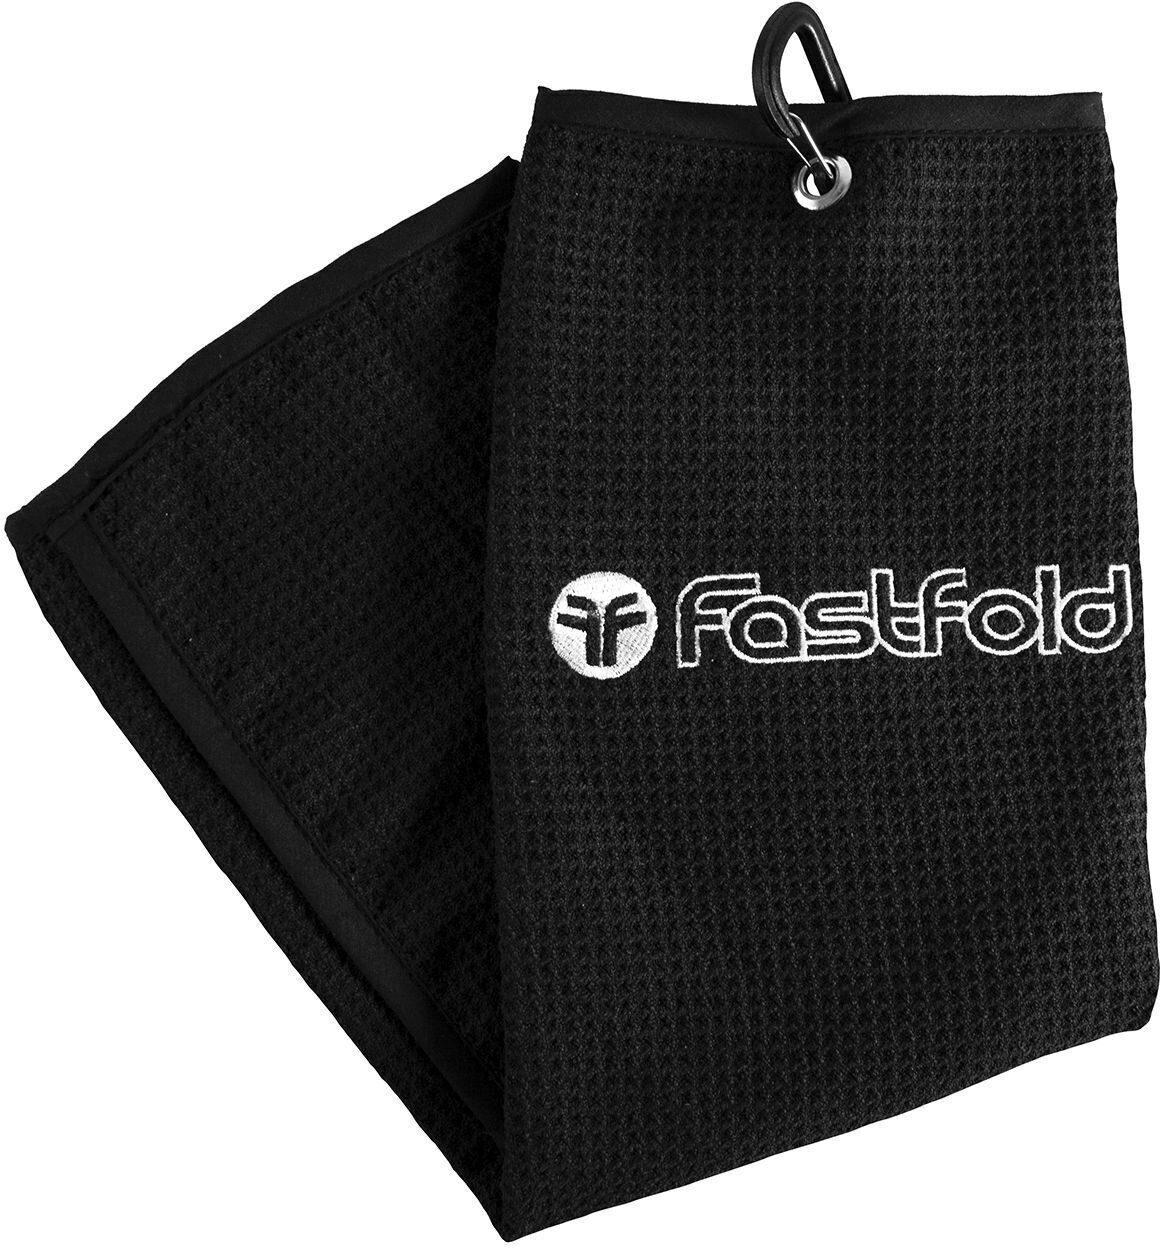 Πετσέτα Fastfold Towel Black